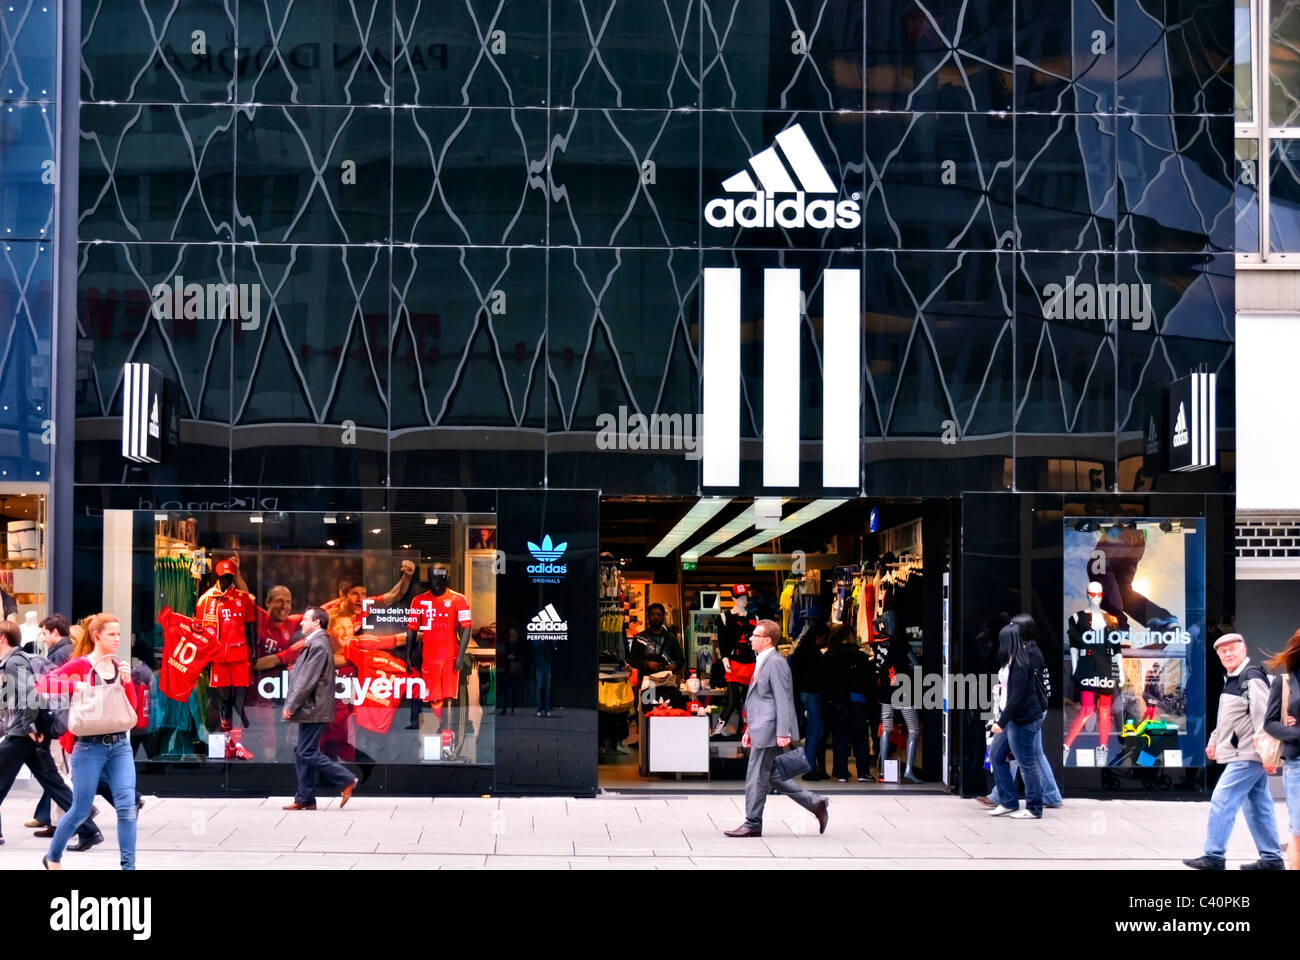 Adidas store immagini e fotografie stock ad alta risoluzione - Alamy